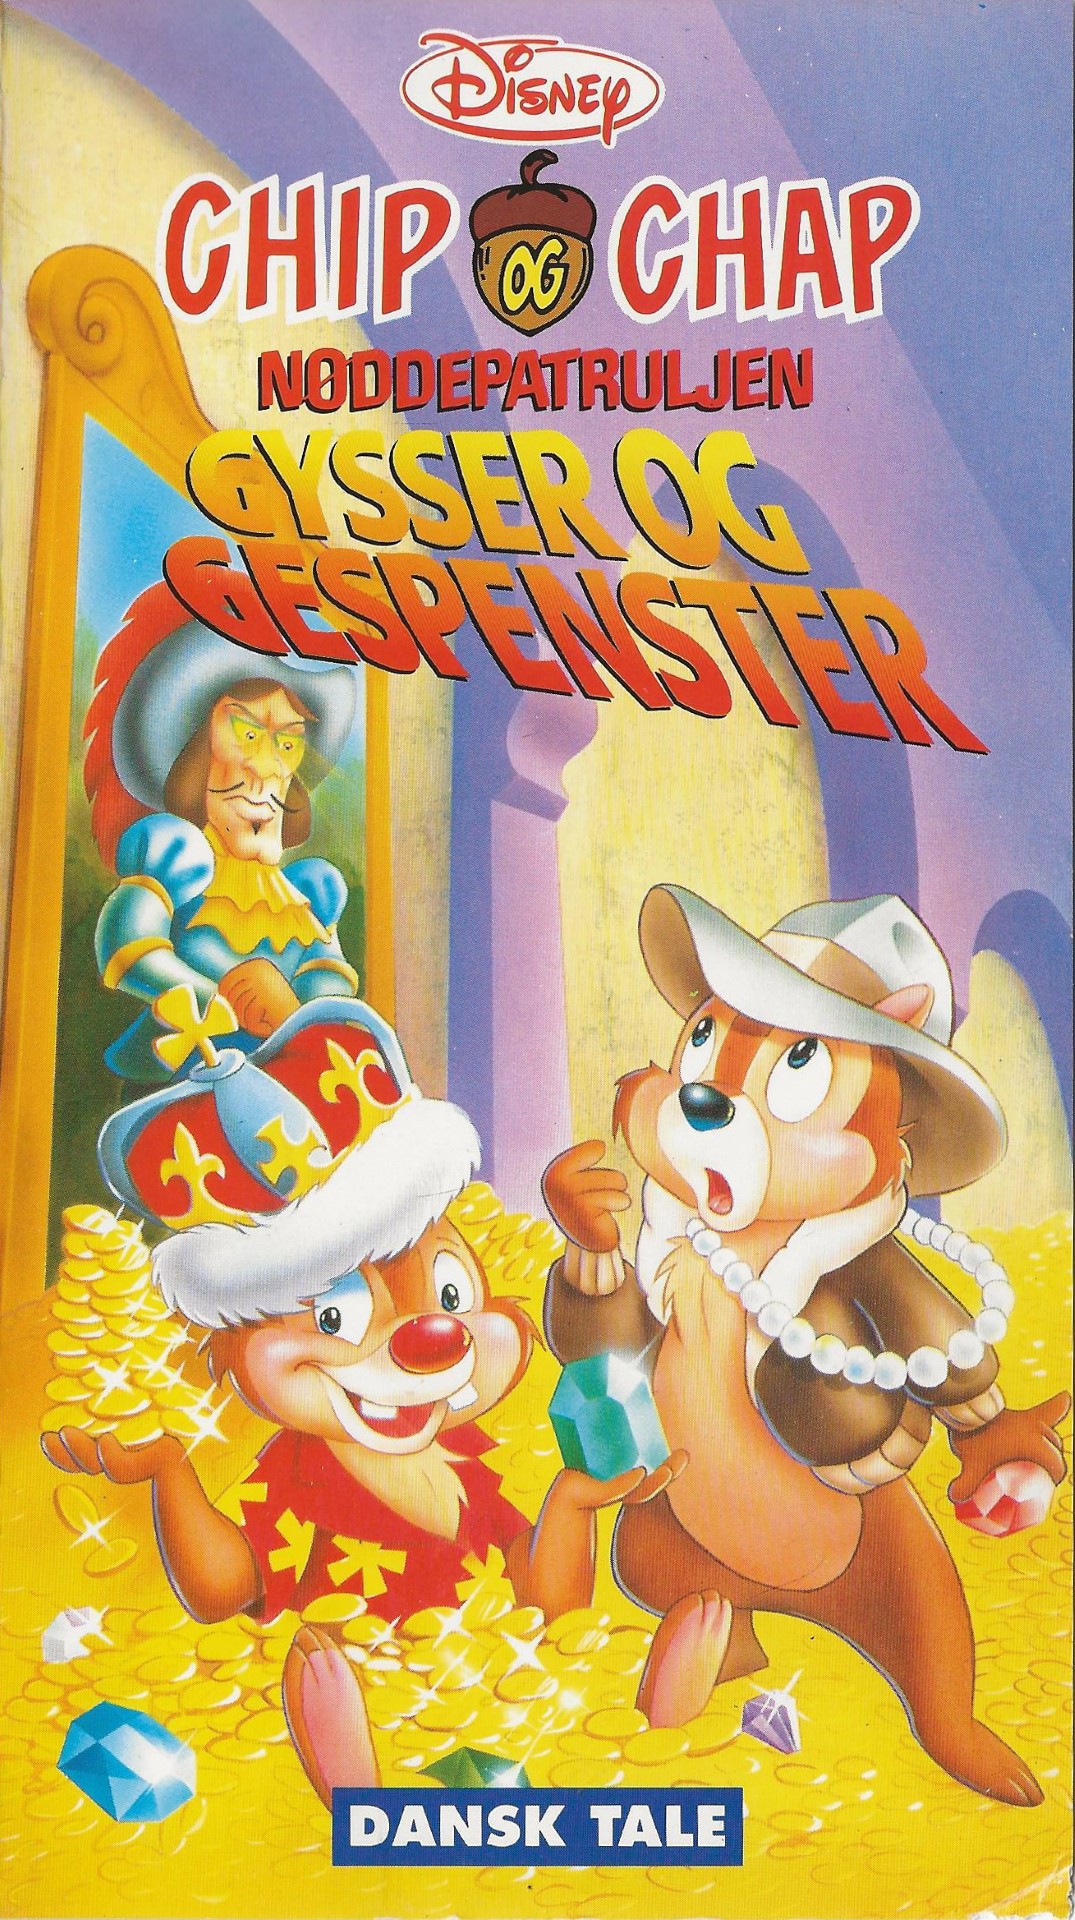 Chip & Chap: Nøddepatruljen - Gysser og gespenster <p>Org.titel: Chip'n'Dale Rescue Rangers: Ghouls and Jewels</p> VHS Disney, Egmont Film 1991